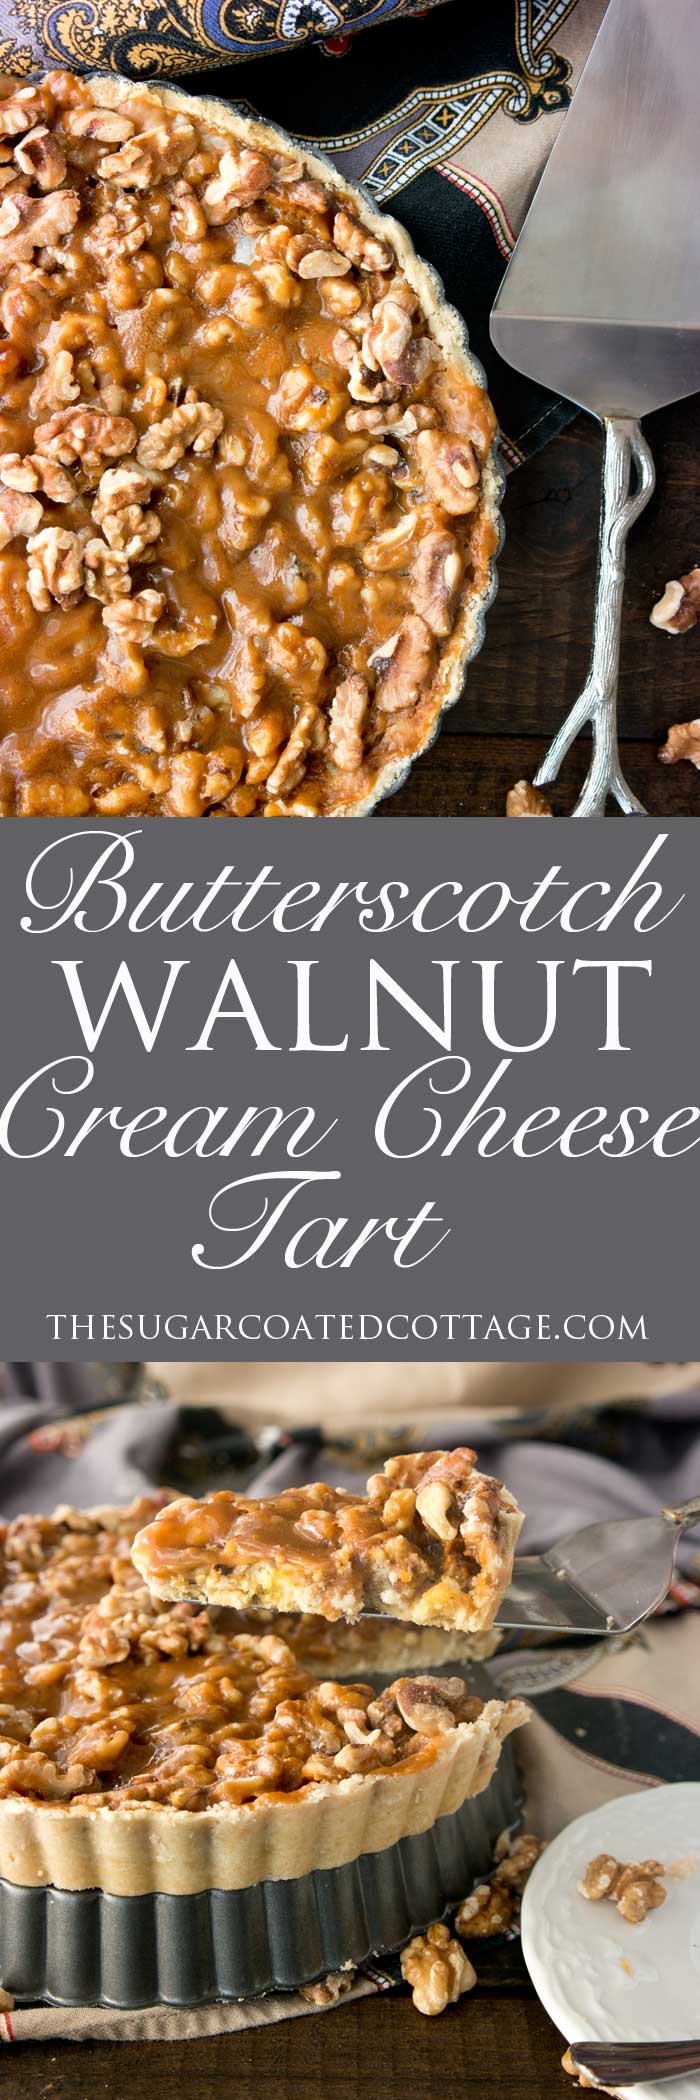 Butterscotch Walnut Cream Cheese Tart